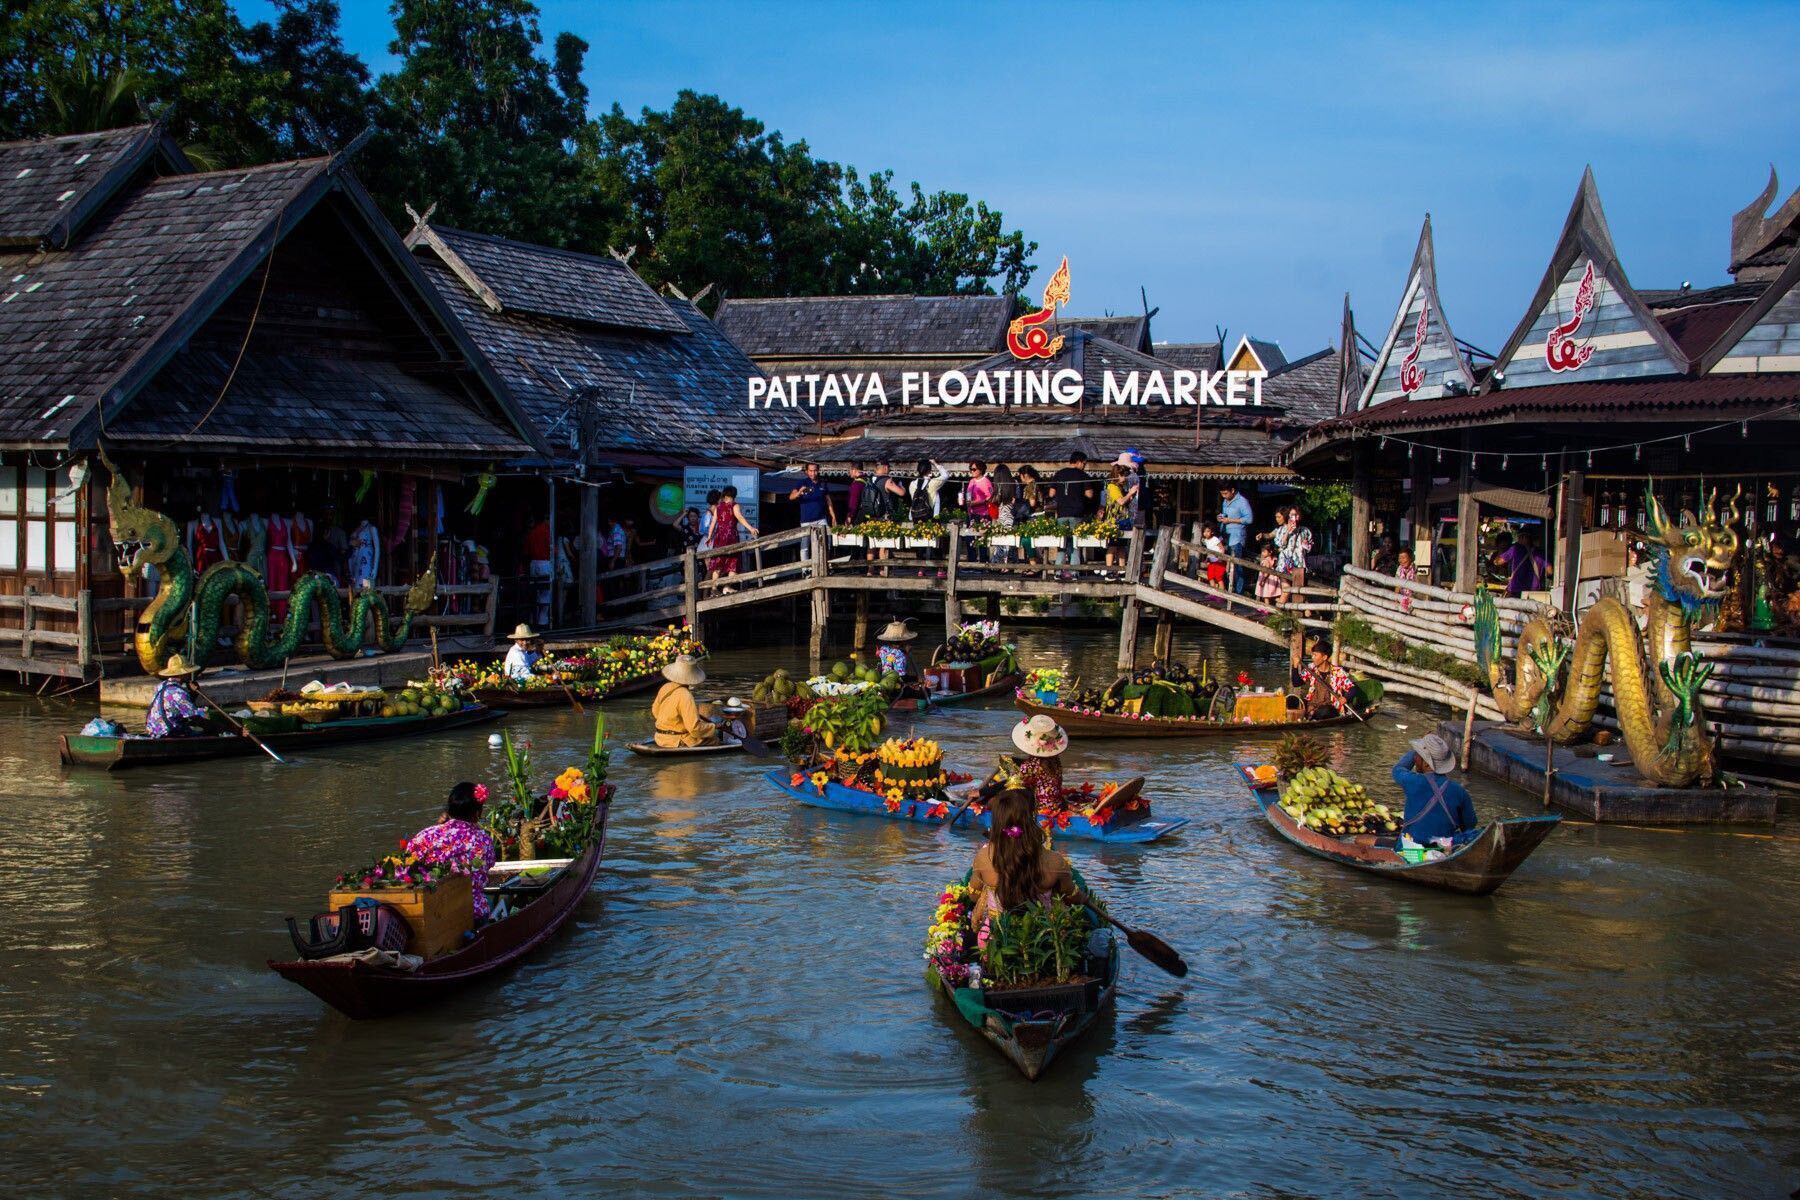 Chùm ảnh chợ nổi Pattaya, địa điểm du lịch nổi tiếng ở Thái Lan trước vụ cháy kinh hoàng